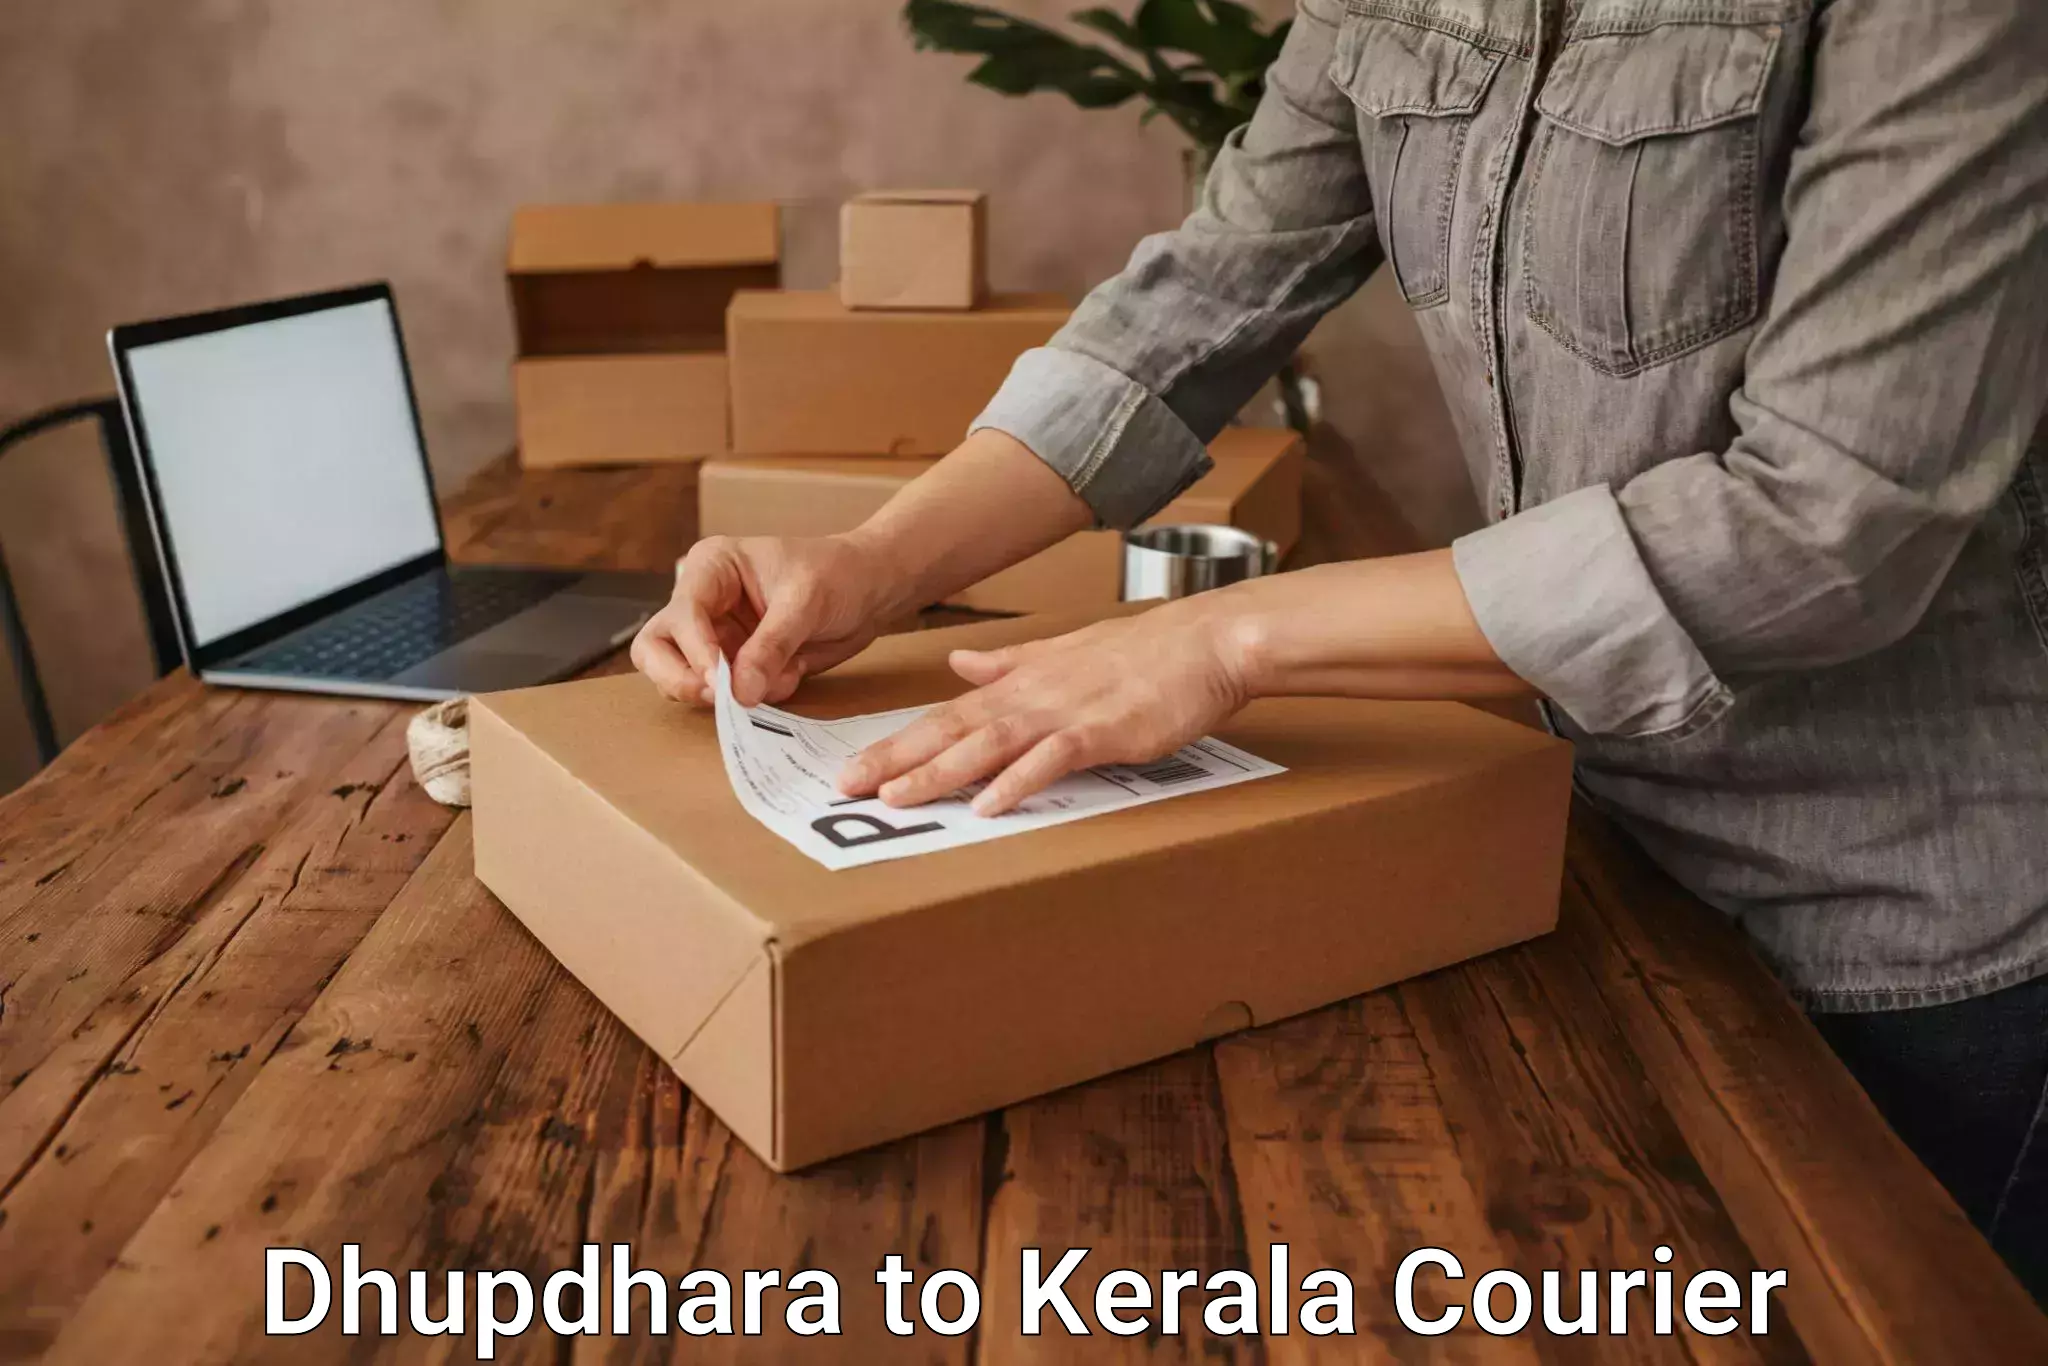 Express mail solutions Dhupdhara to Kerala